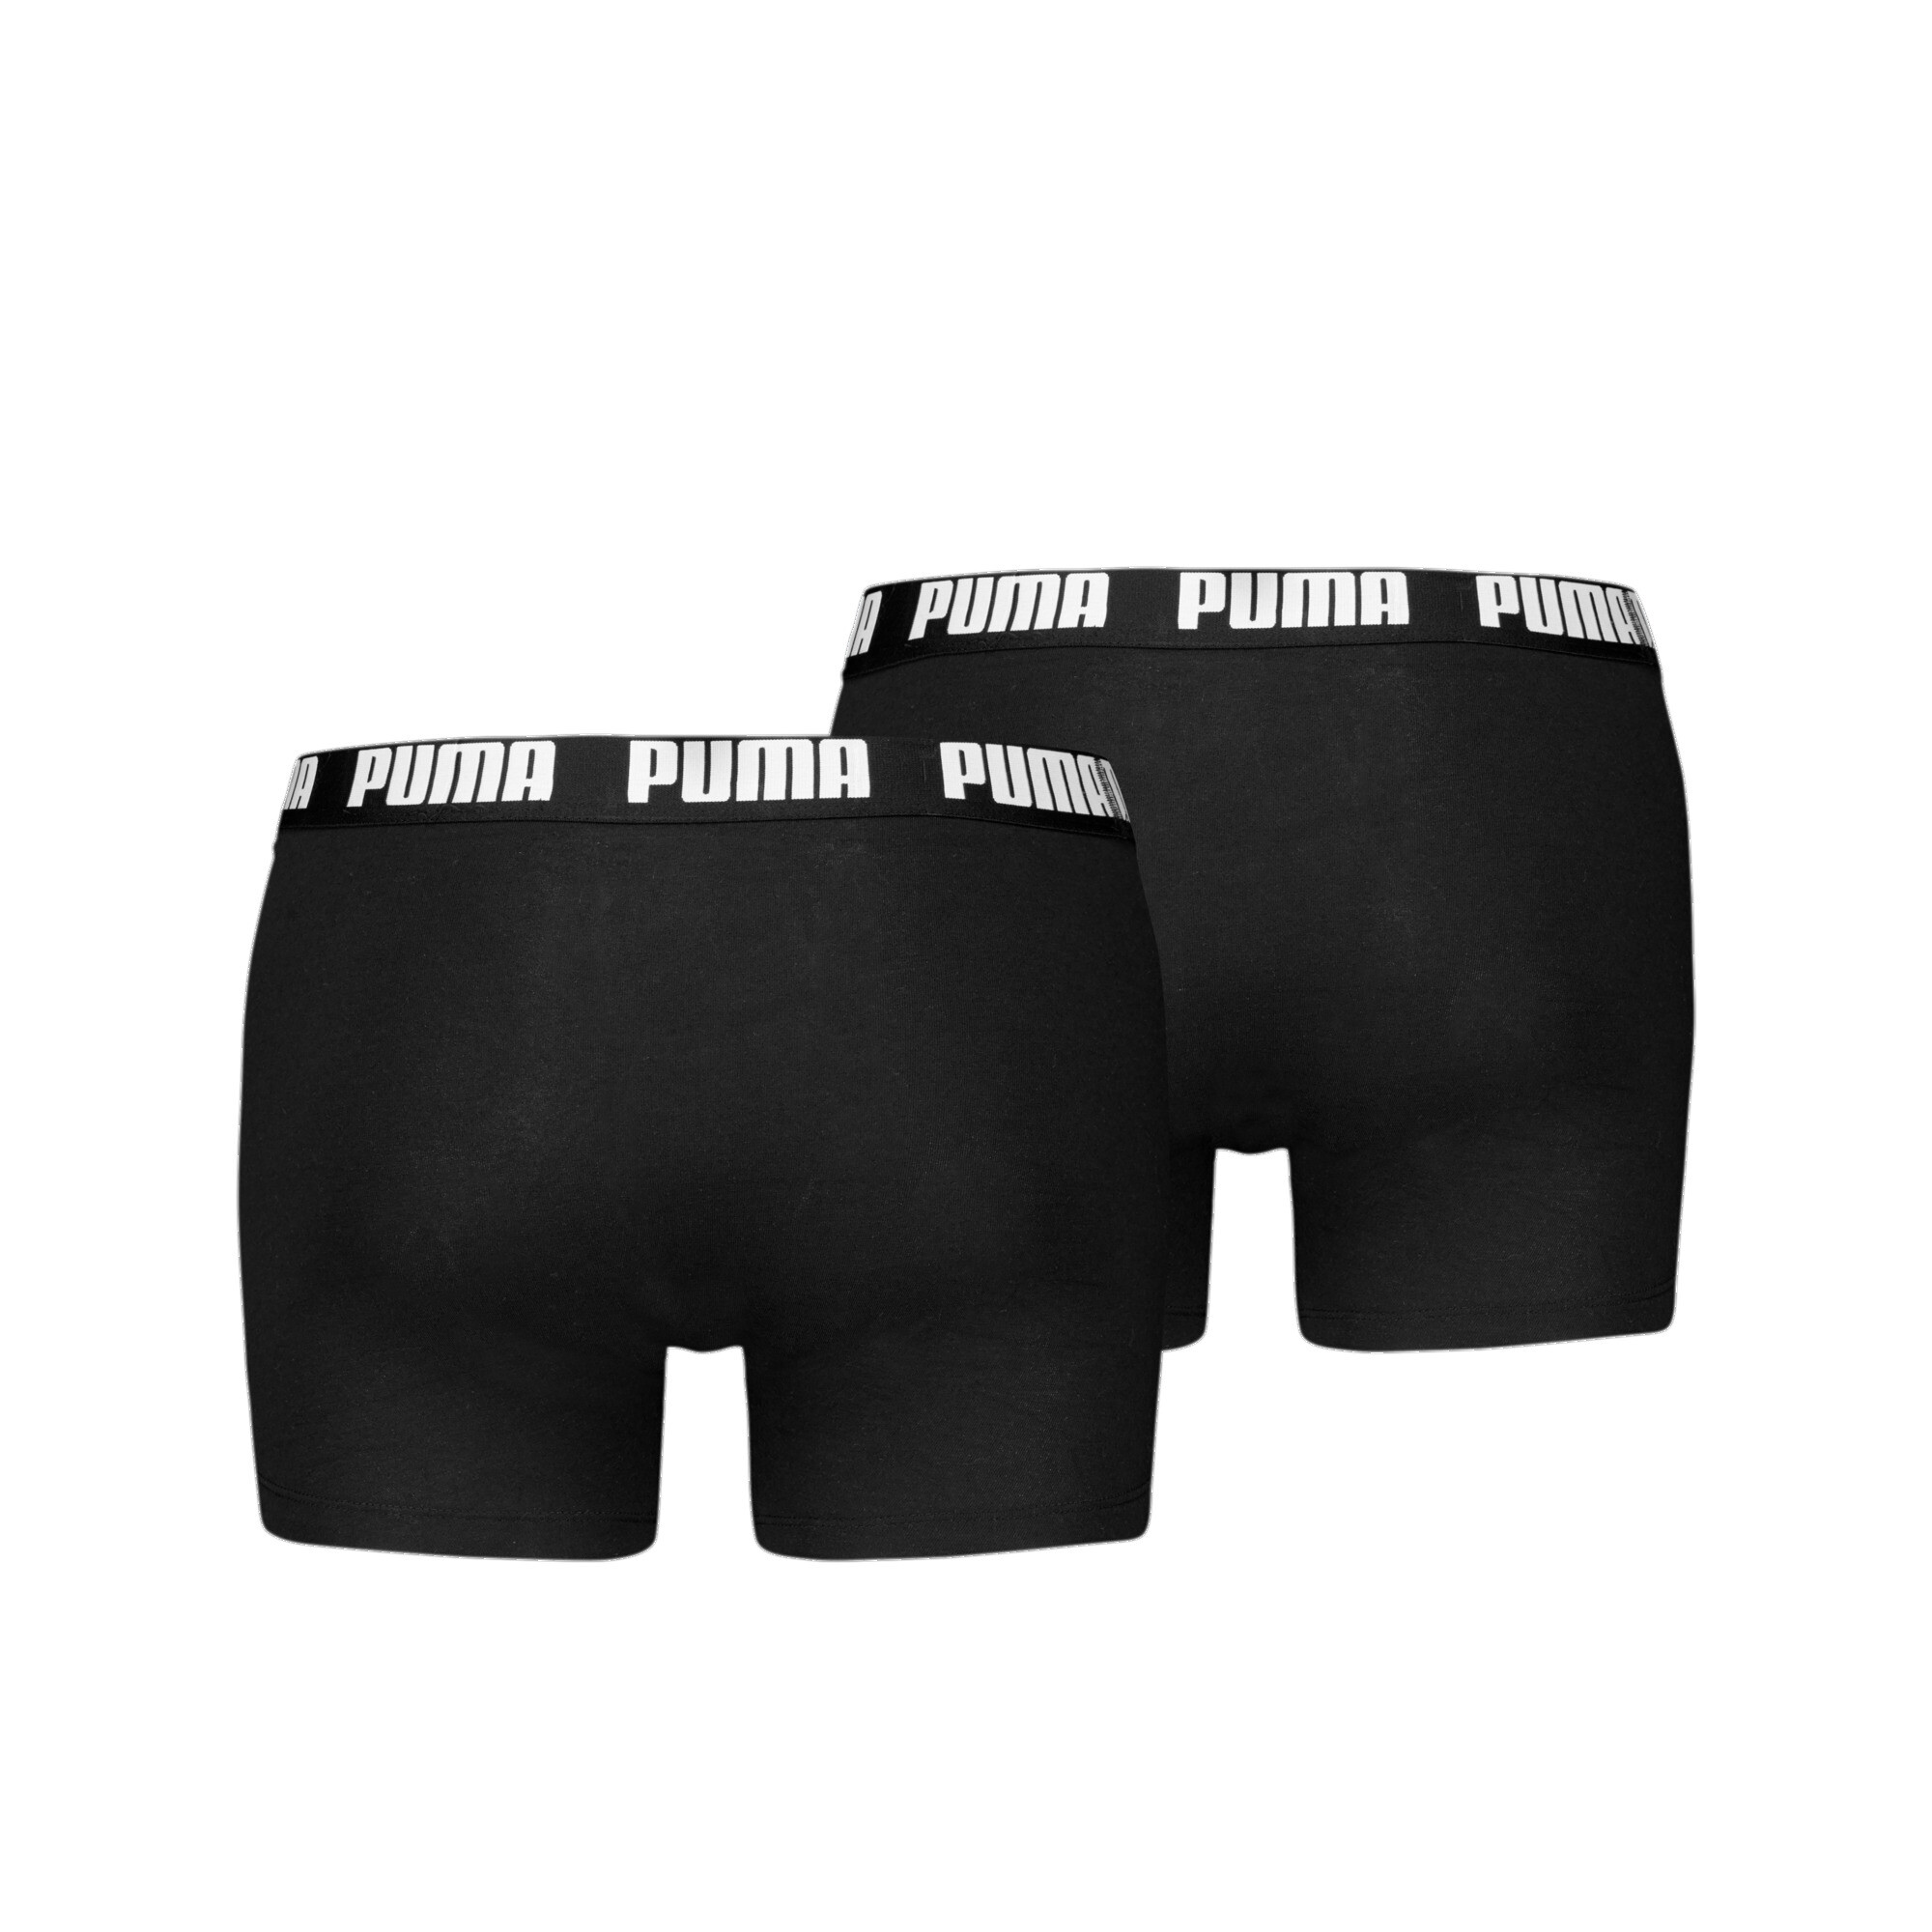 Men's Puma's Boxer Briefs 2 Pack, Black, Size 3, Clothing